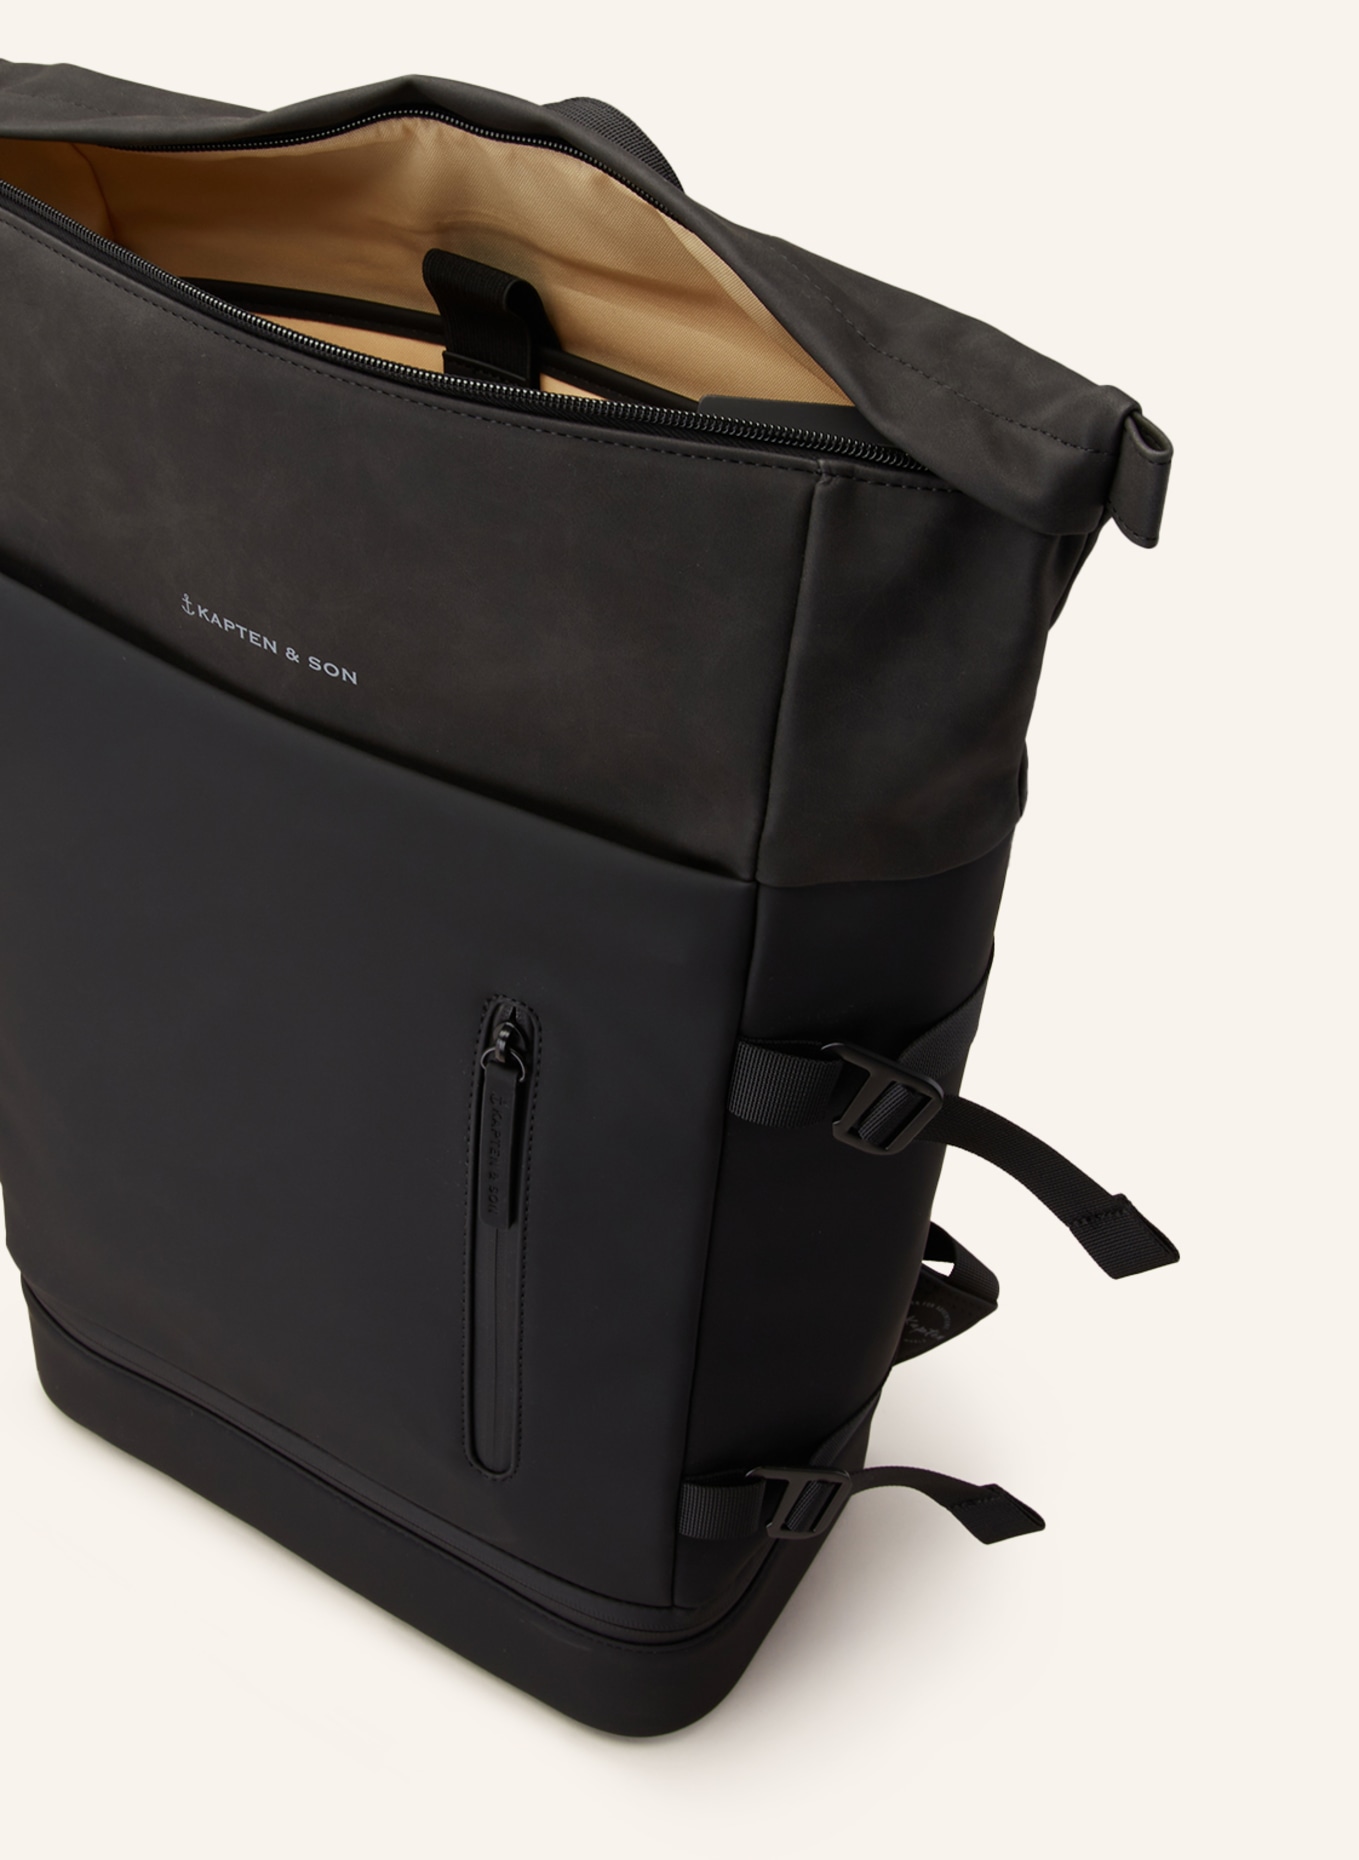 KAPTEN & SON Backpack HELSINKI 26 l with laptop compartment, Color: BLACK (Image 3)